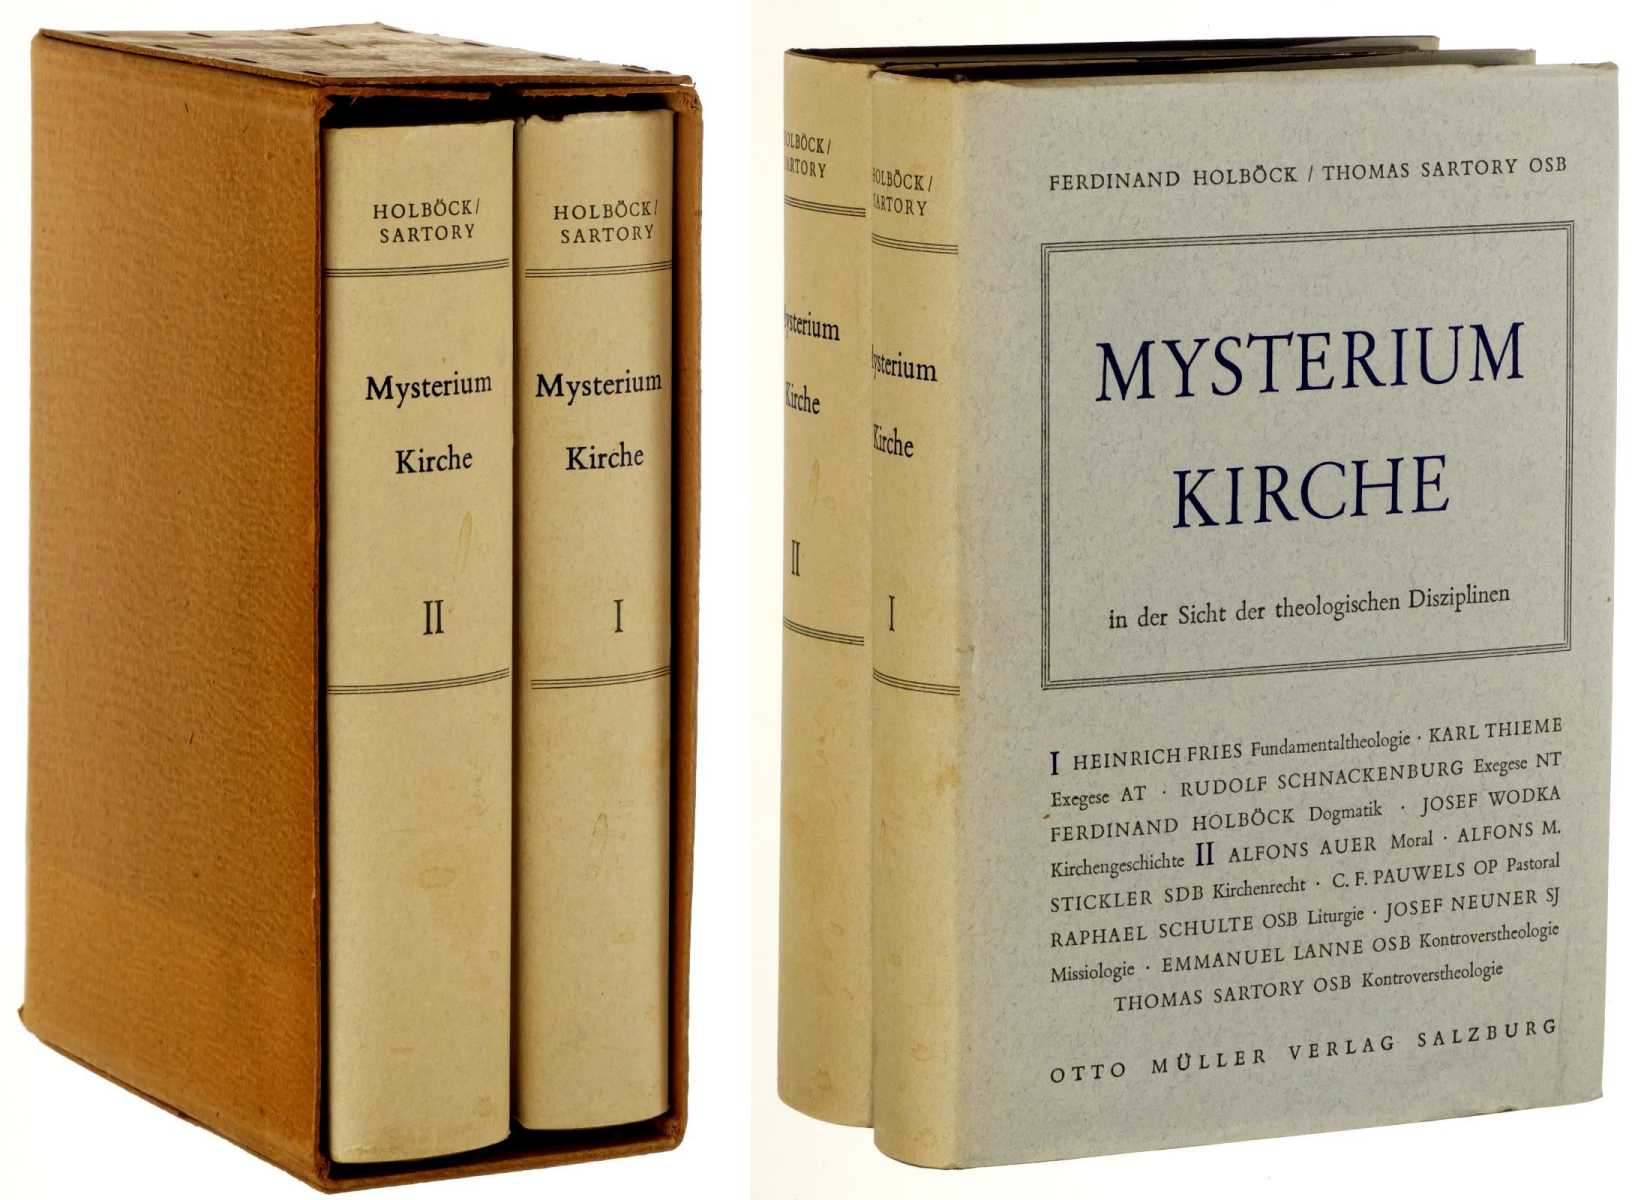   Mysterium Kirche in der Sicht der theologischen Disziplinen. Hrsg. von Ferdinand Holböck/ Thomas Sartory OSB. 